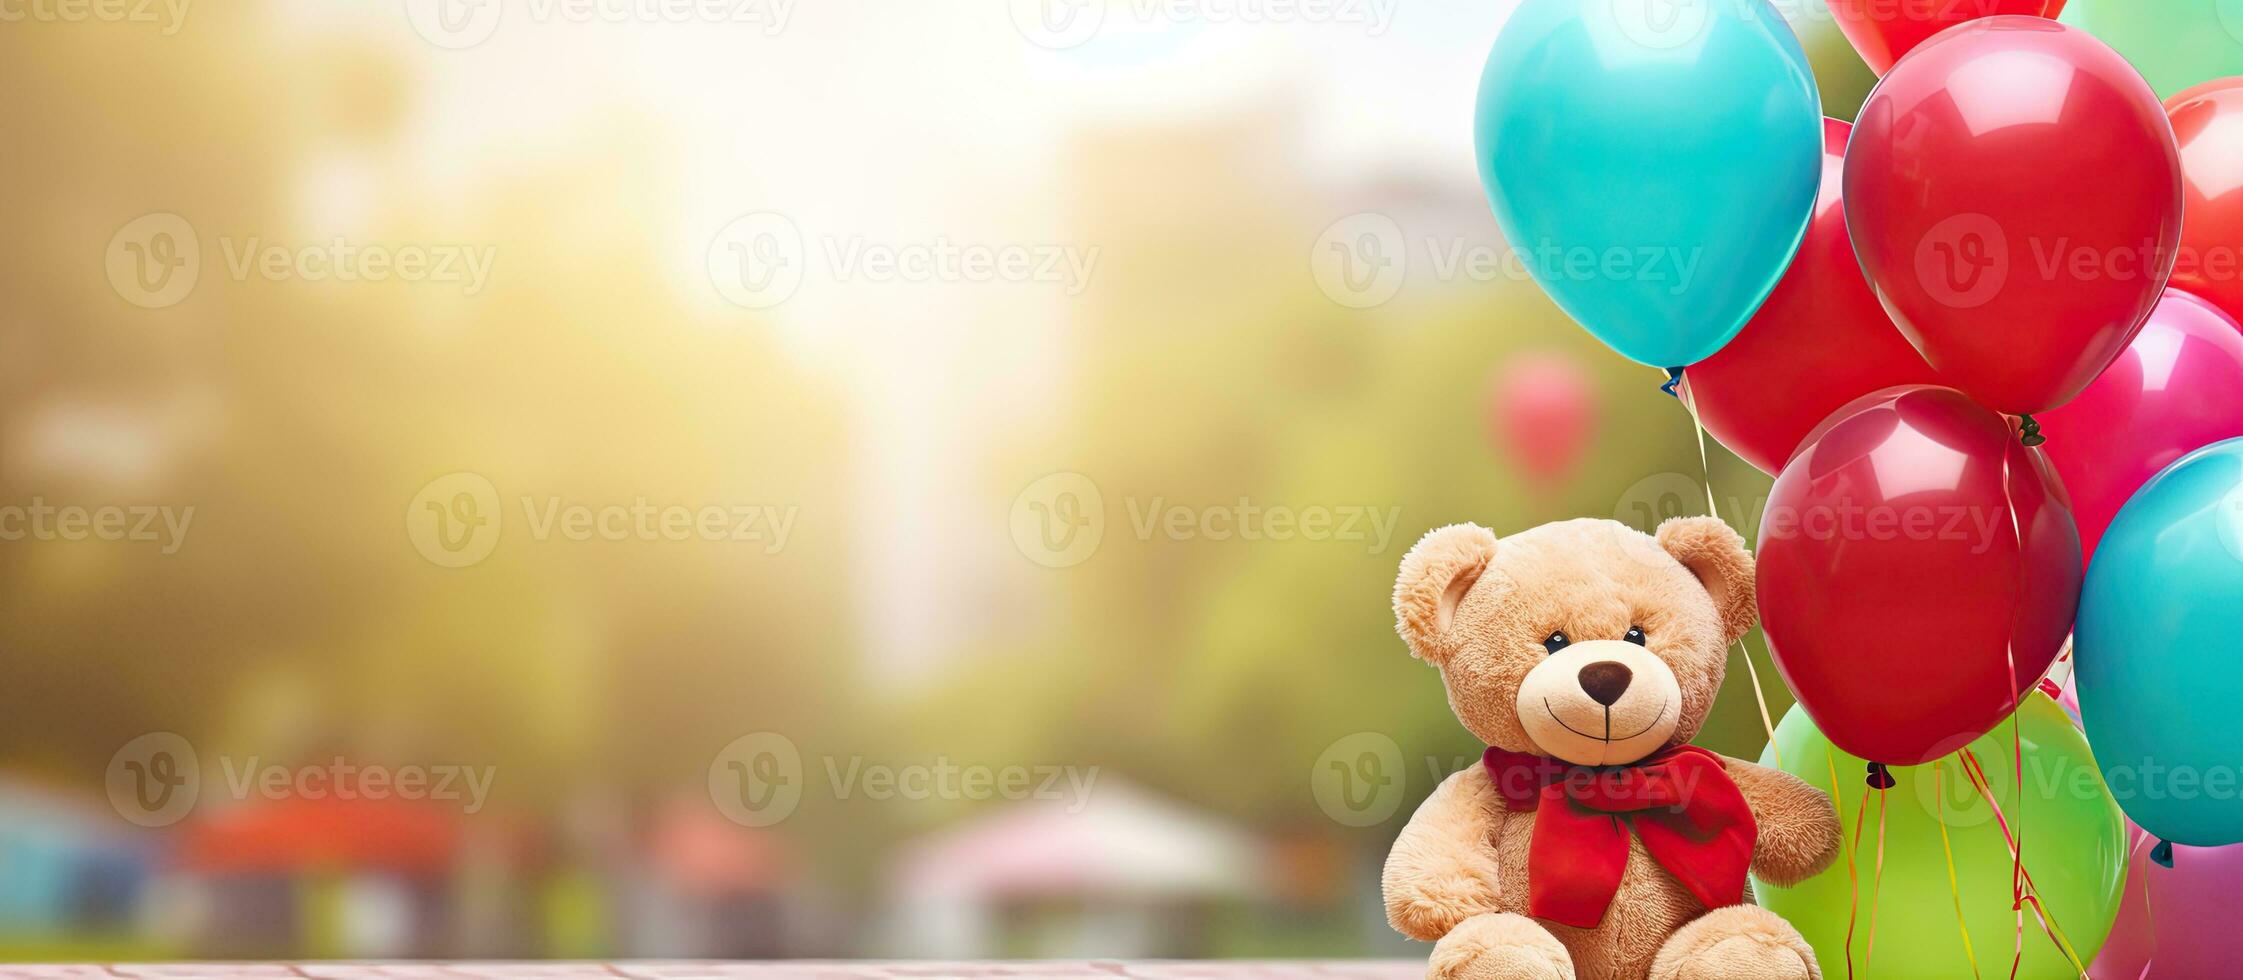 liten flicka med autism lyckligt spelar med henne bäst vän en teddy Björn medan innehav färgrik helium ballonger i en grön parkera lekplats med kopia s foto